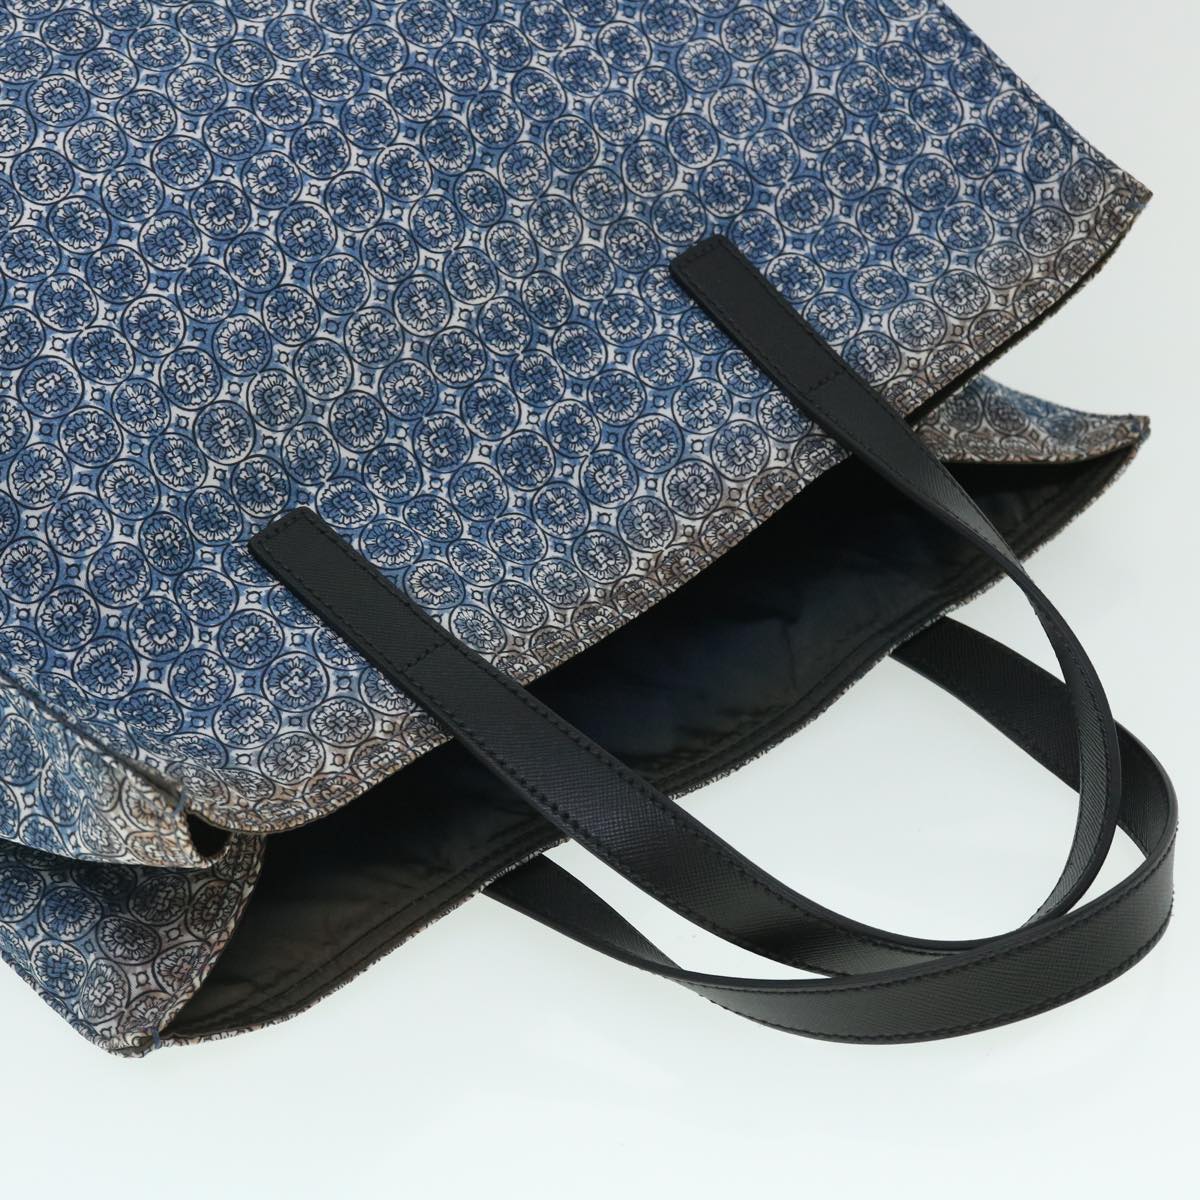 PRADA Tote Bag Nylon Leather Blue White Auth 53703